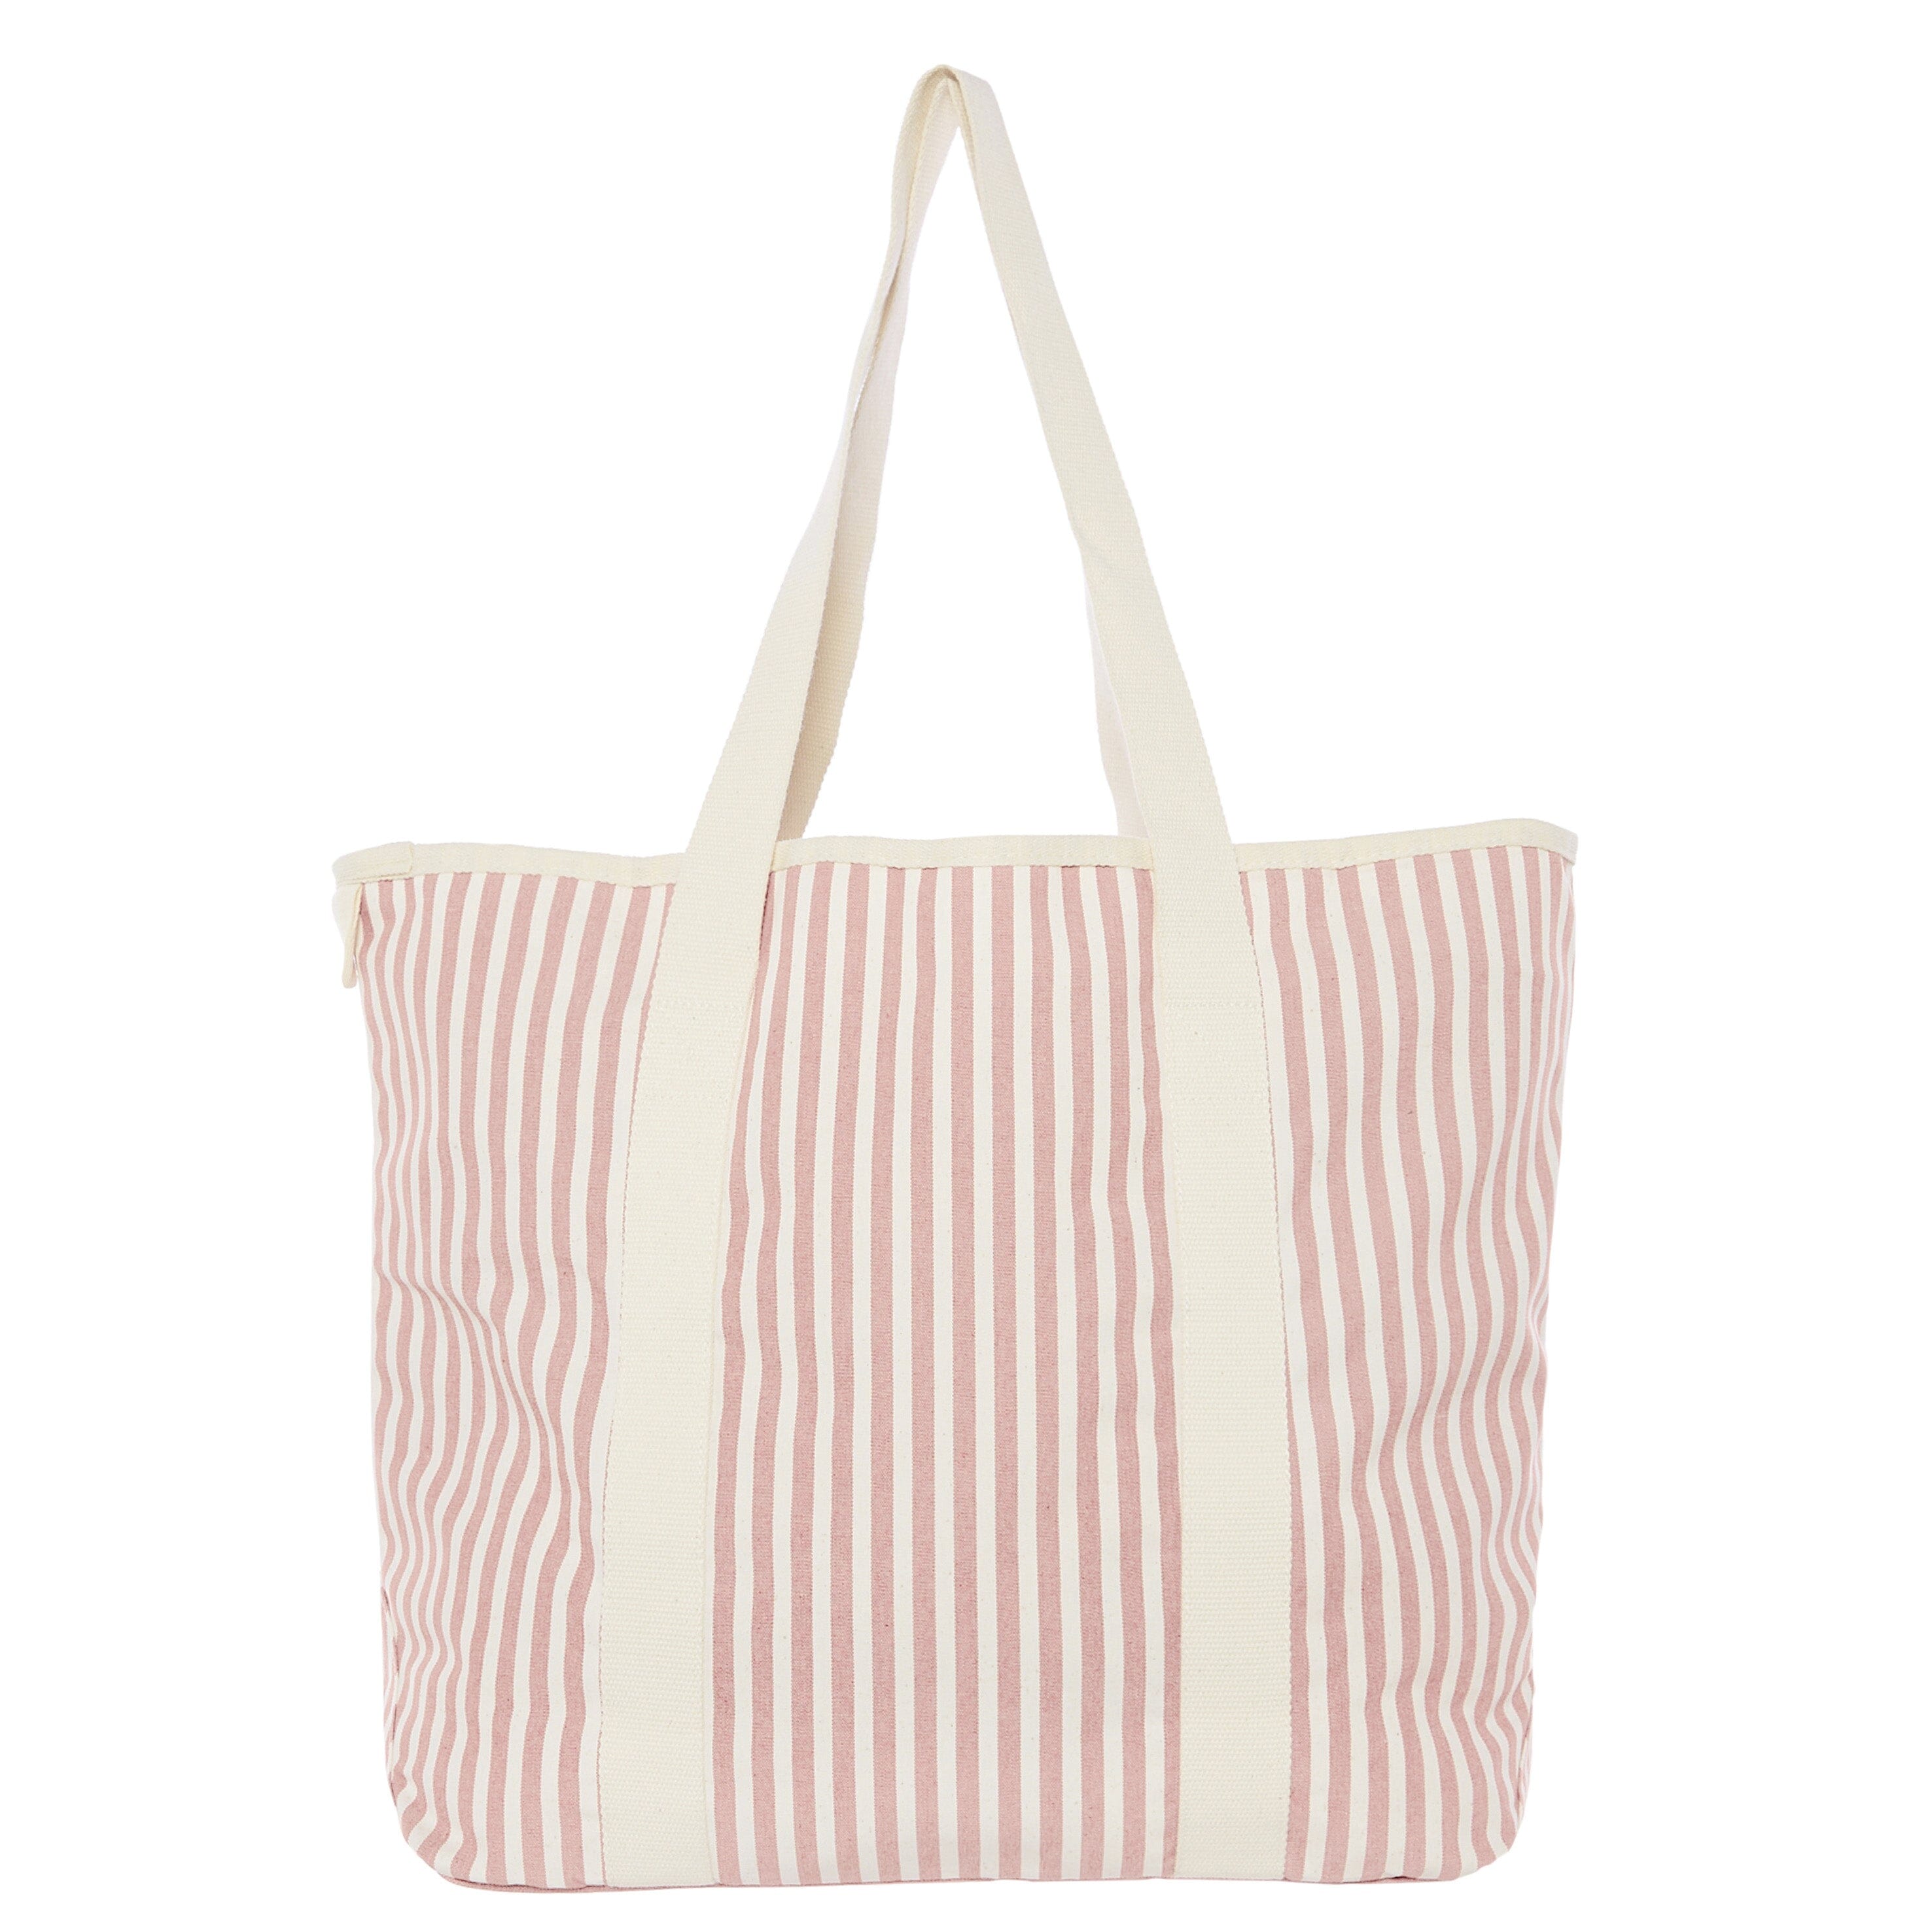 The Beach Bag - Lauren's Pink Stripe